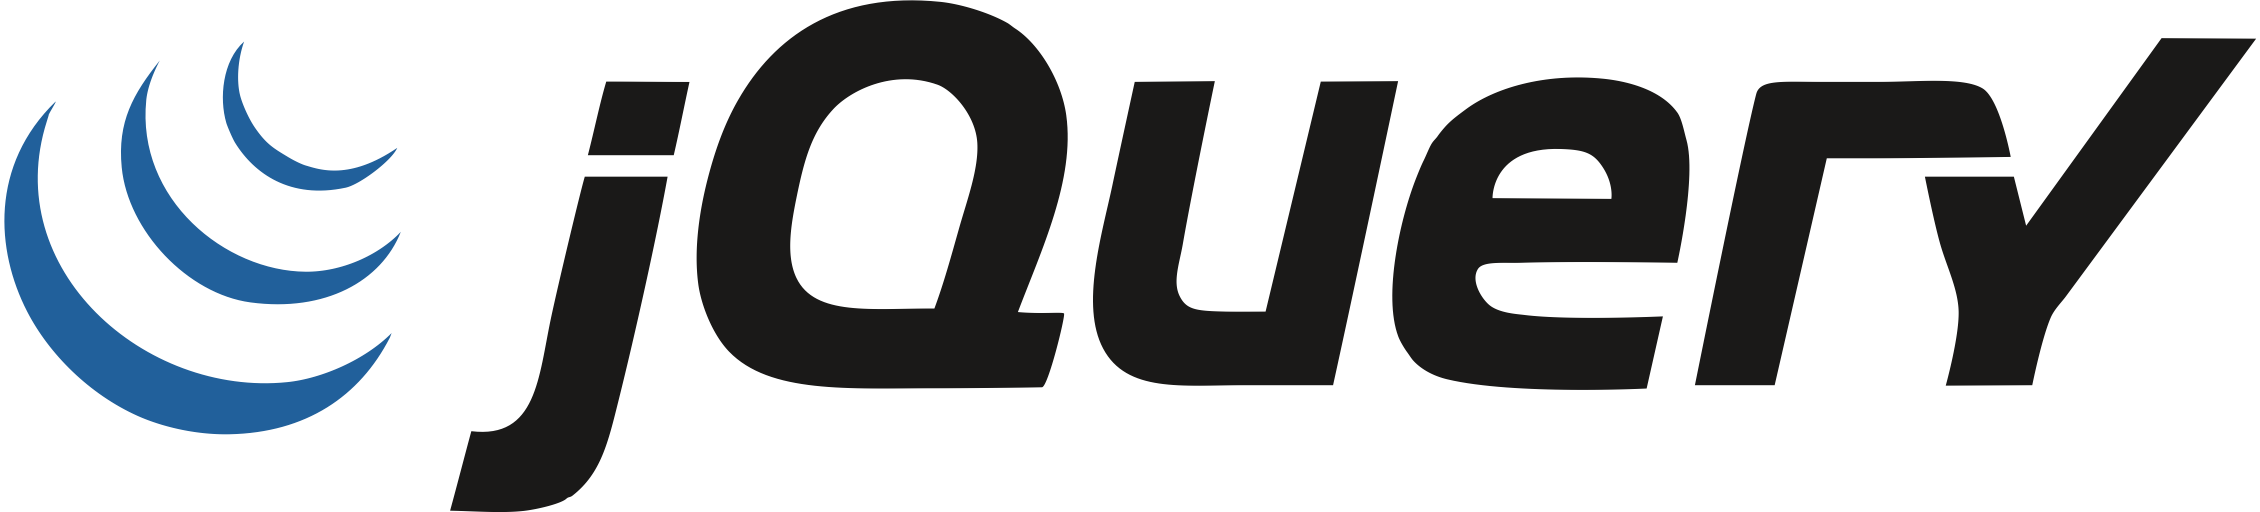 jQuery logo.